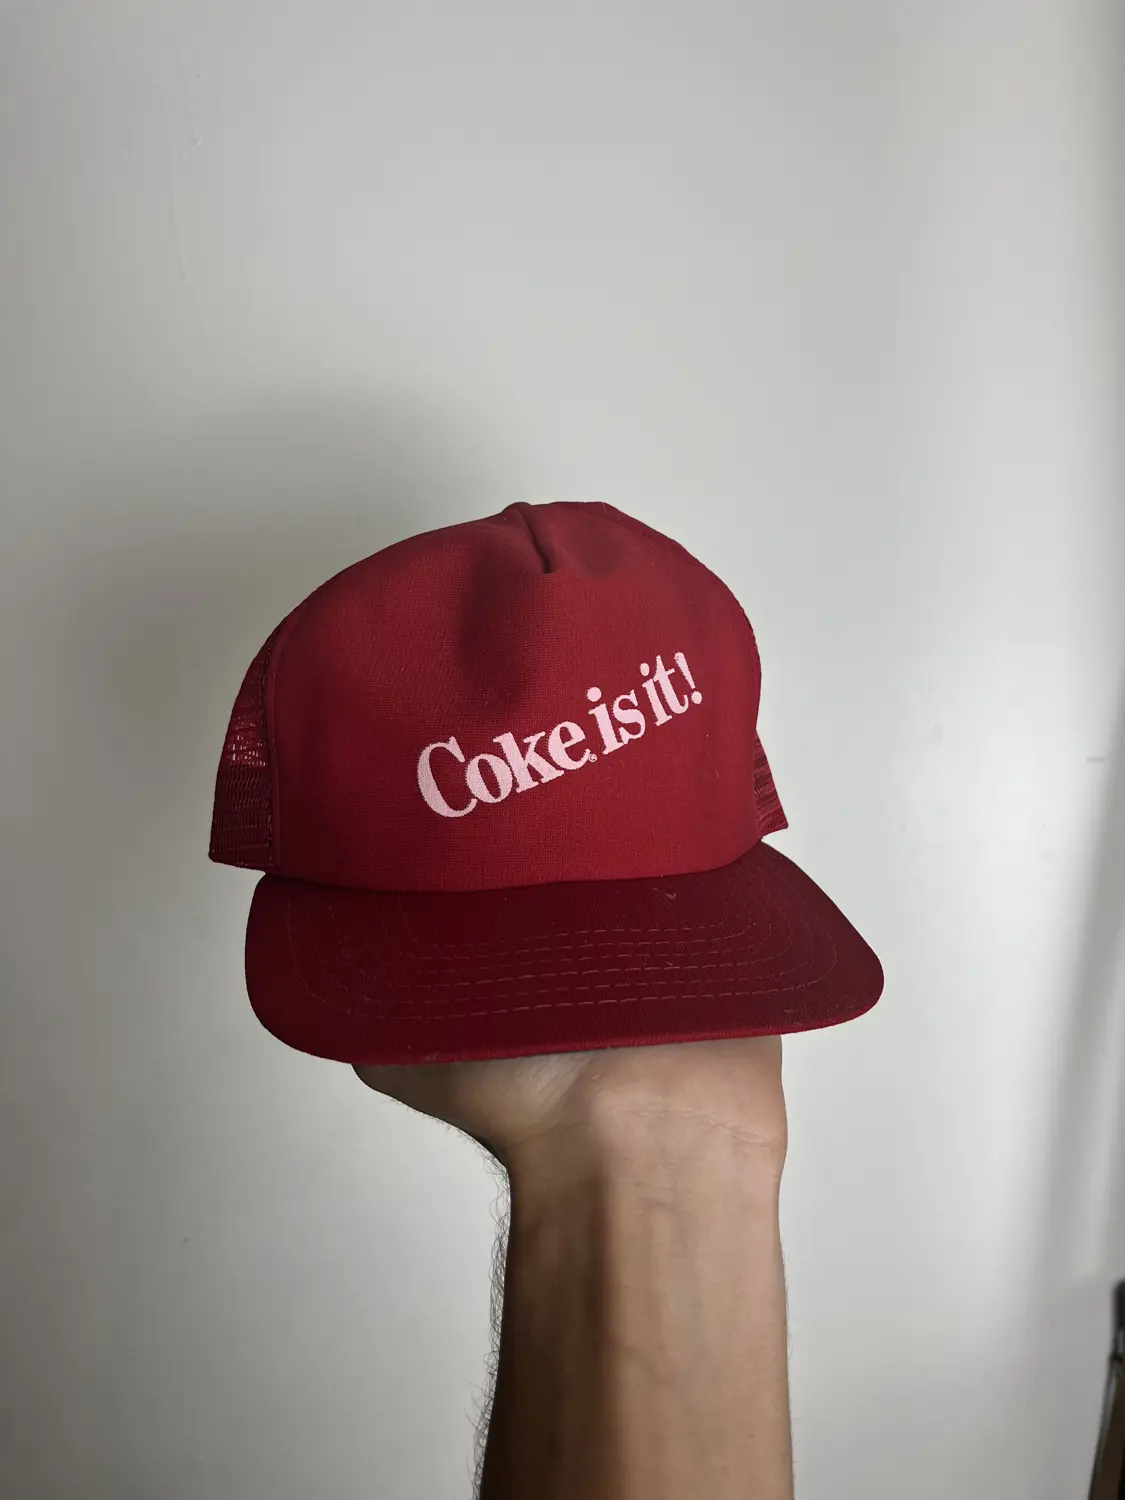 Coke is It hat